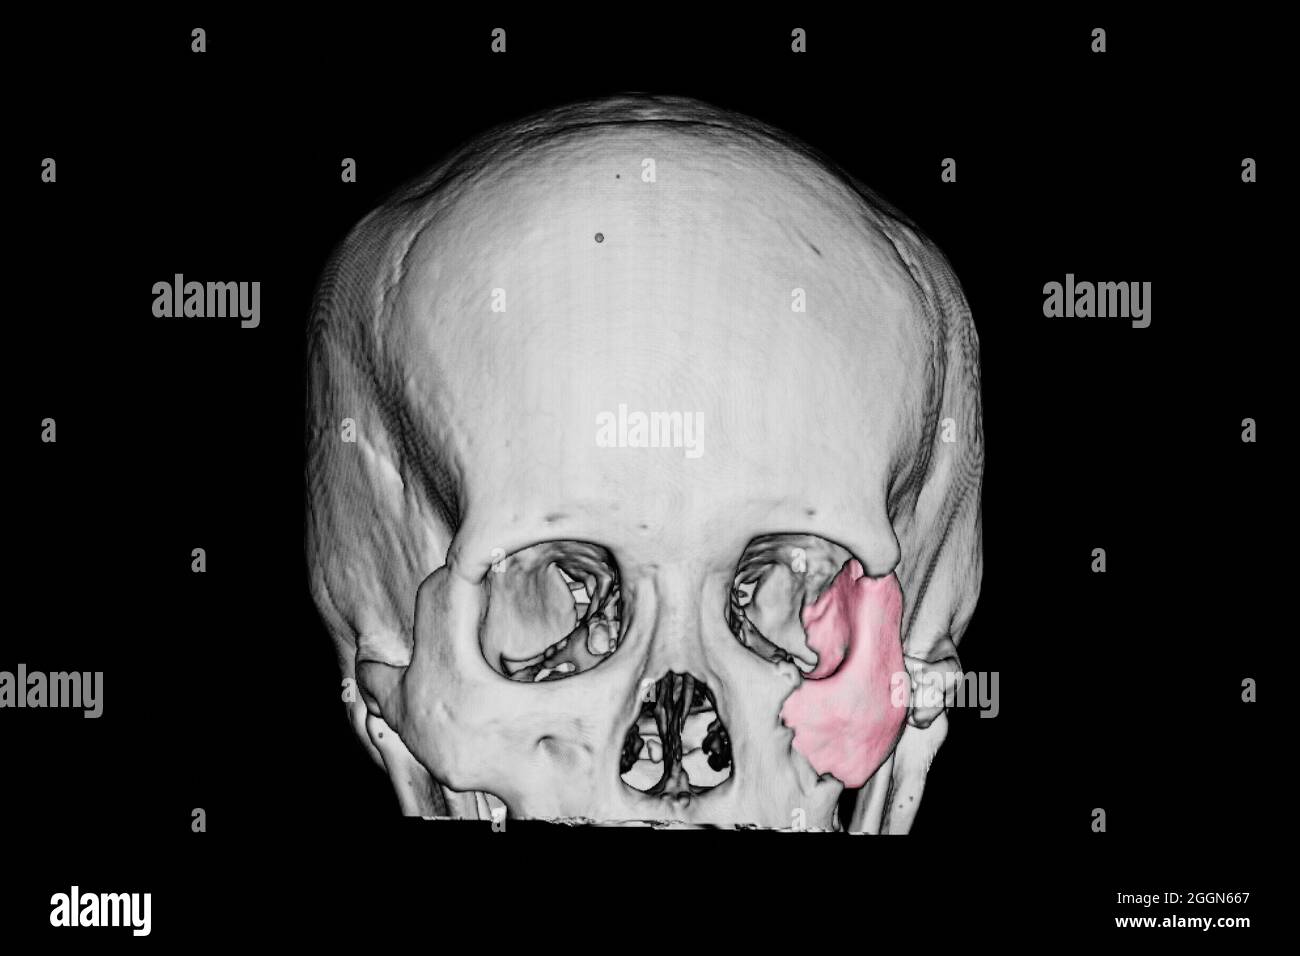 Pellicola 3-D di un cranio di un paziente con lesione cerebrale traumatica che mostra osso zigomatico fratturato (area rosa) Foto Stock